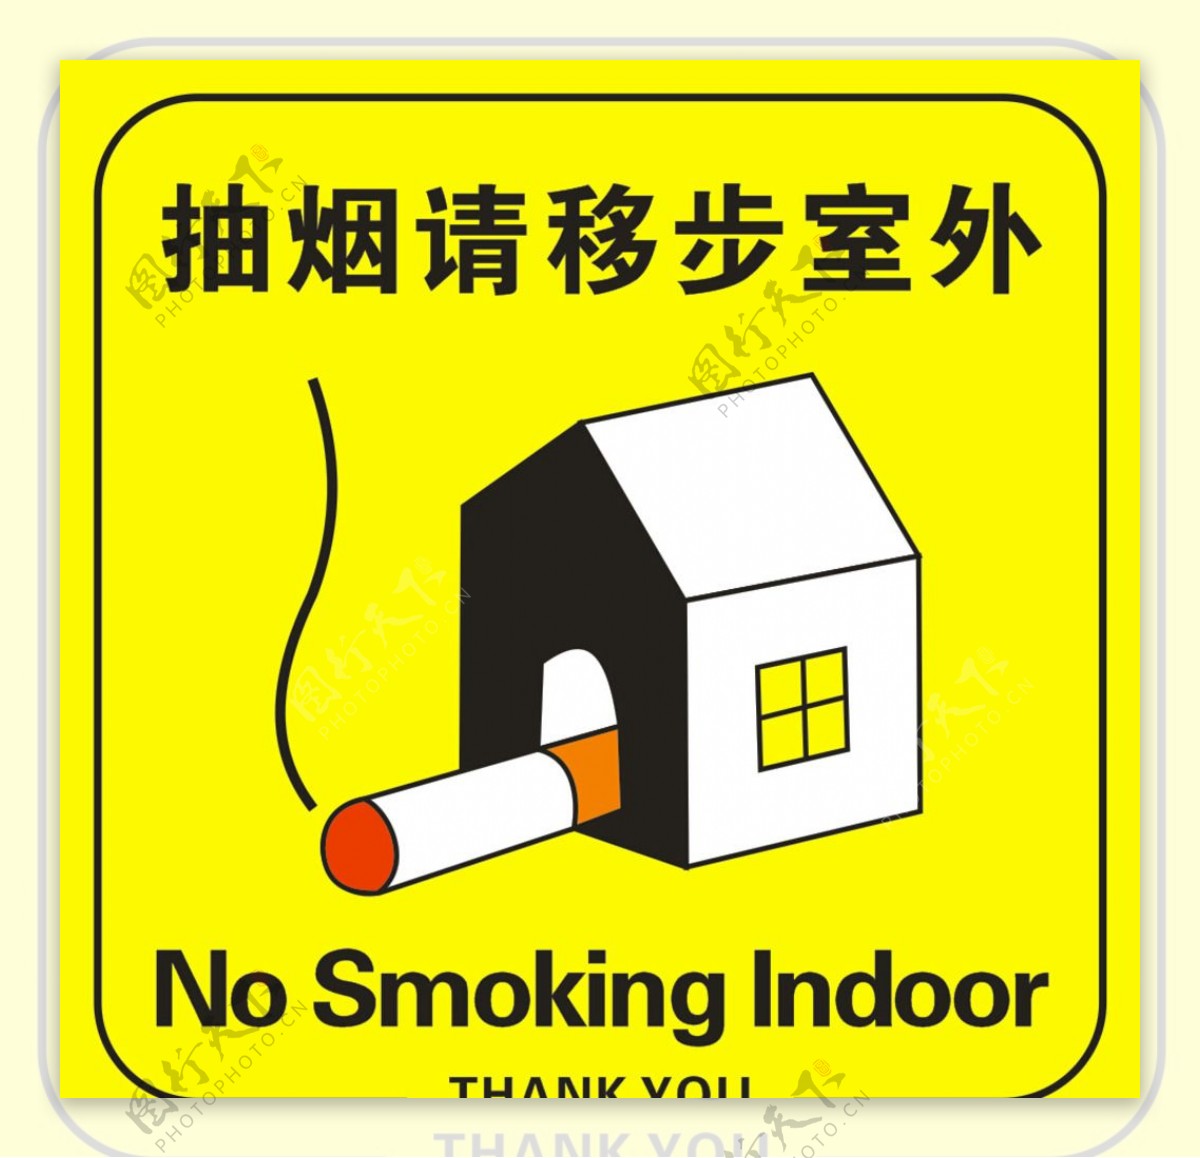 抽烟请移步室外